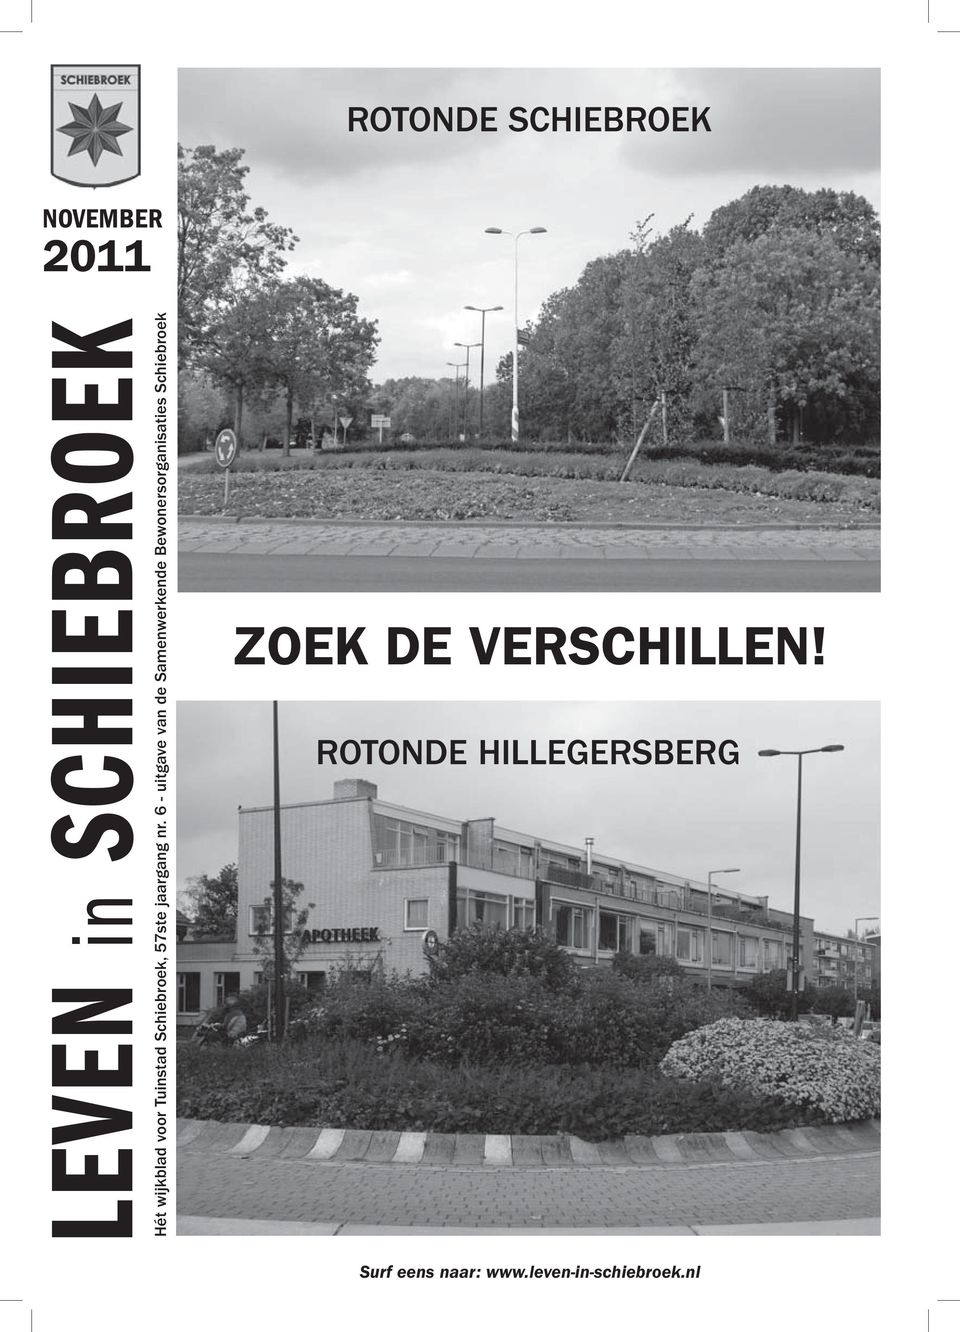 6 - uitgave van de Samenwerkende Bewonersorganisaties Schiebroek